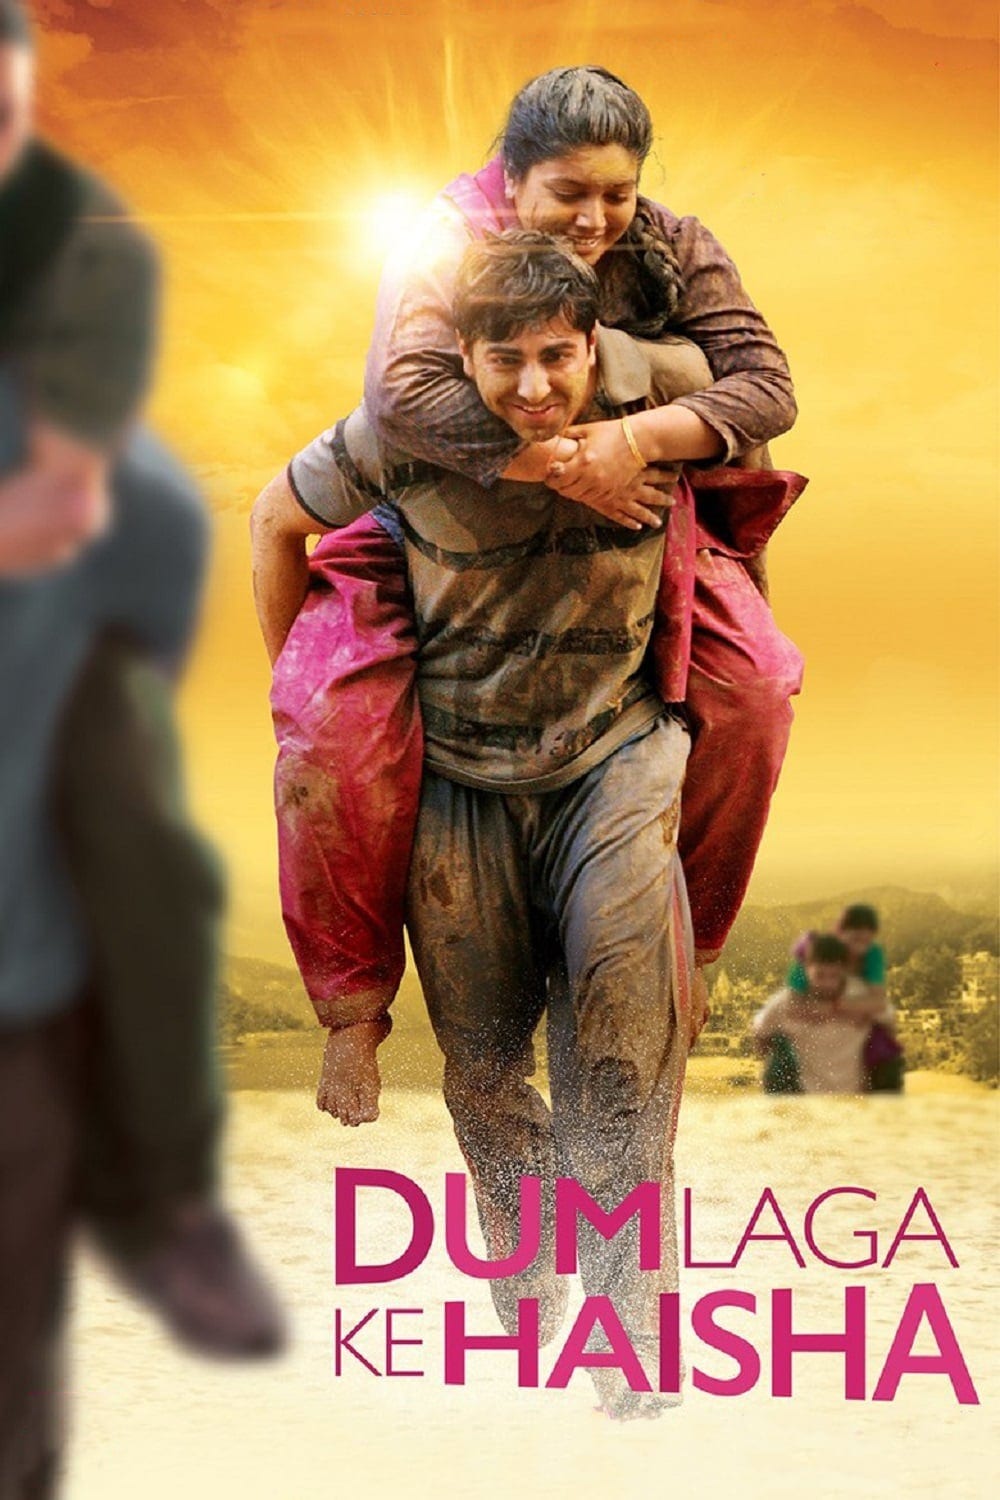 Poster for the movie "Dum Laga Ke Haisha"